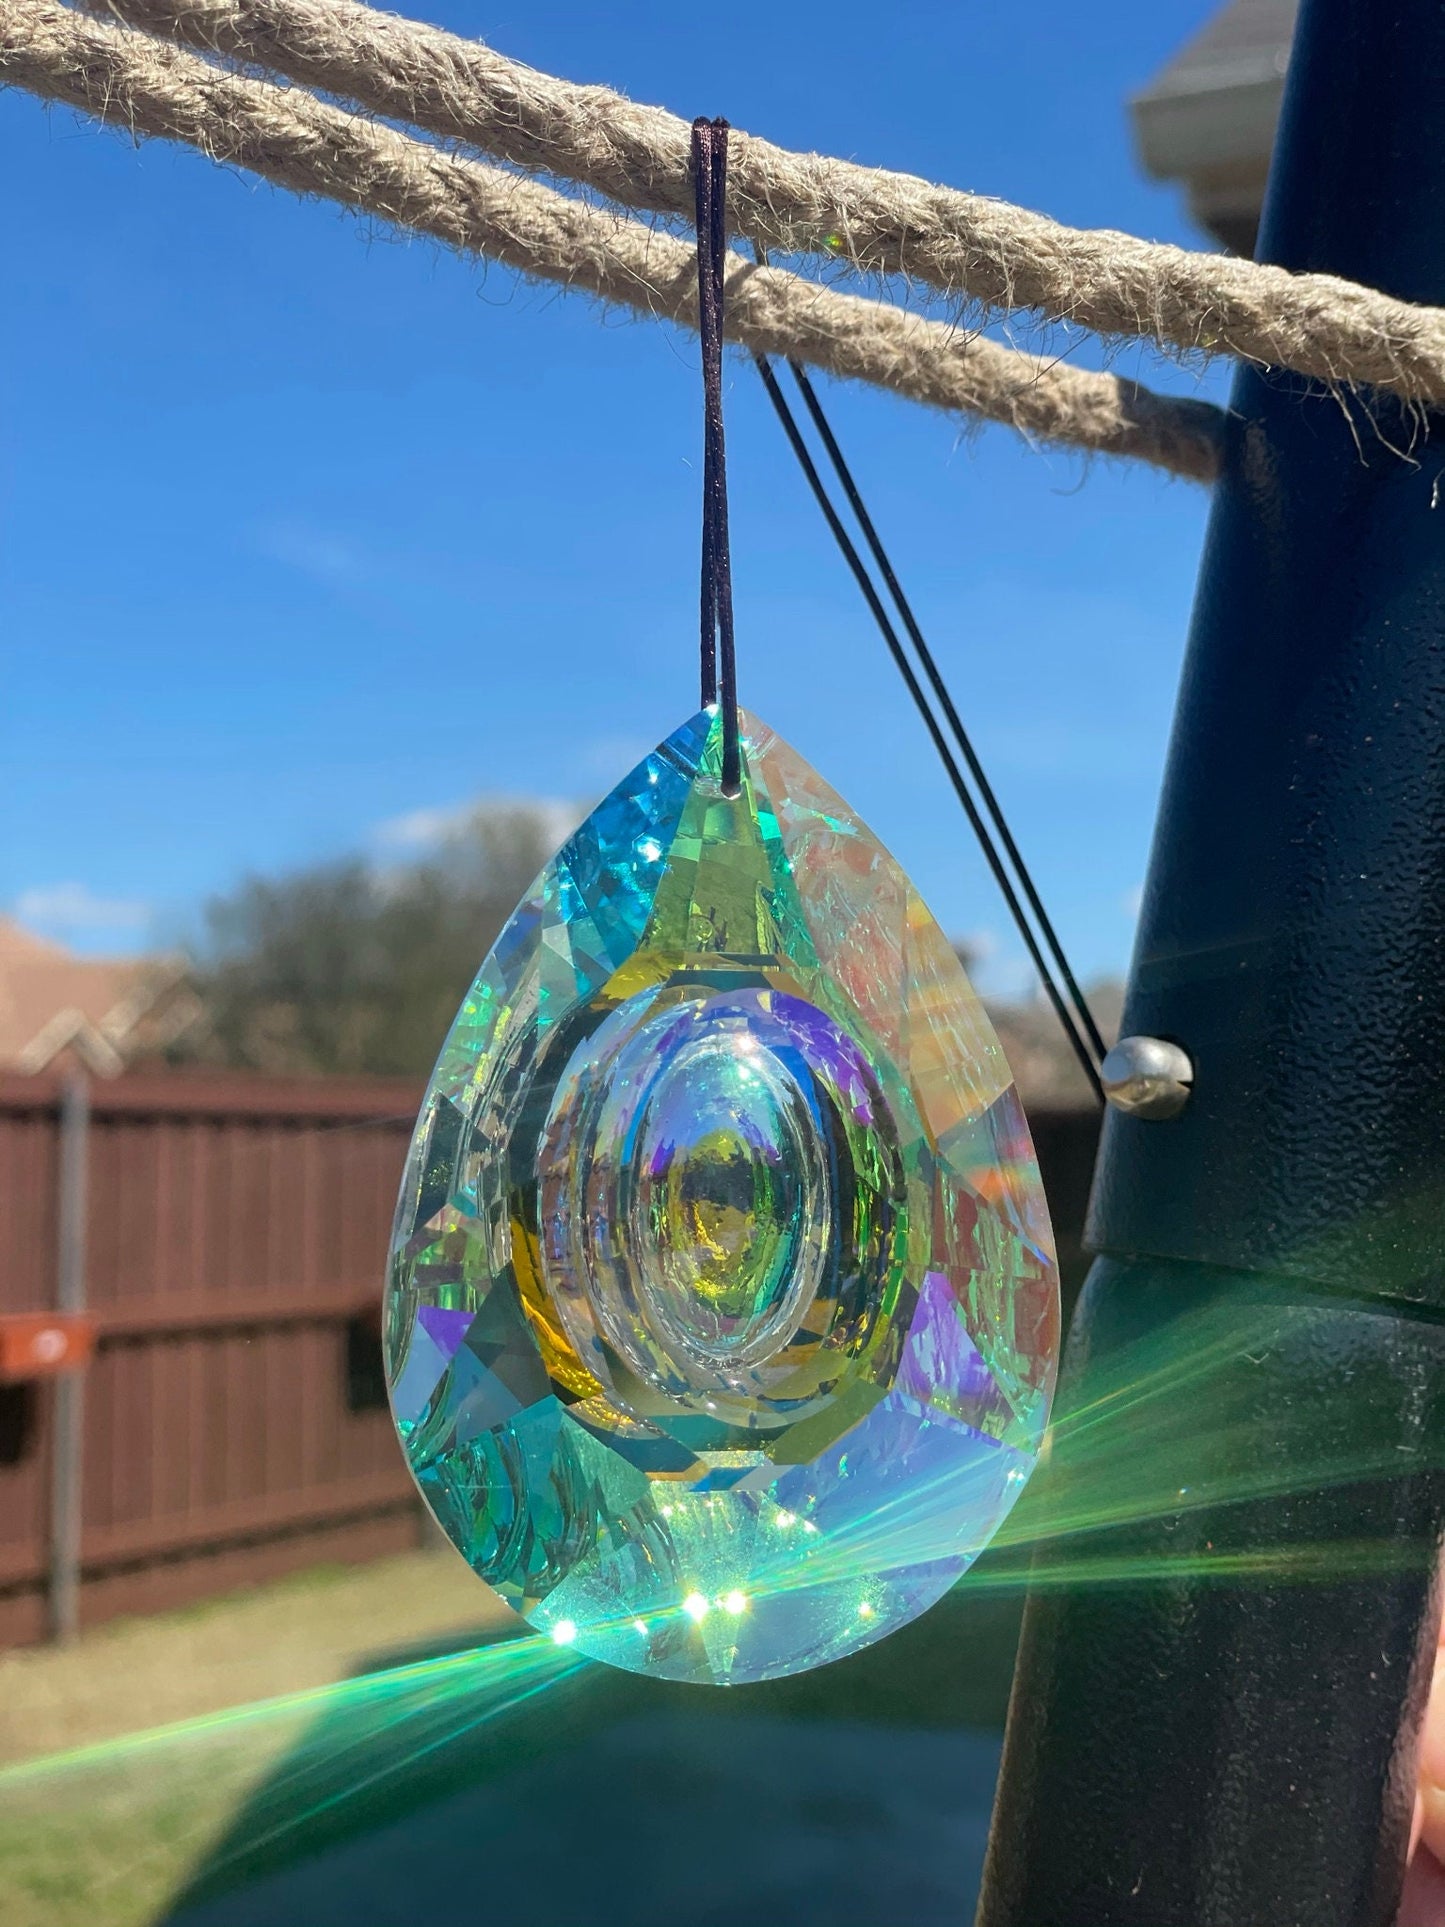 Hanging Crystal Prism Suncatcher